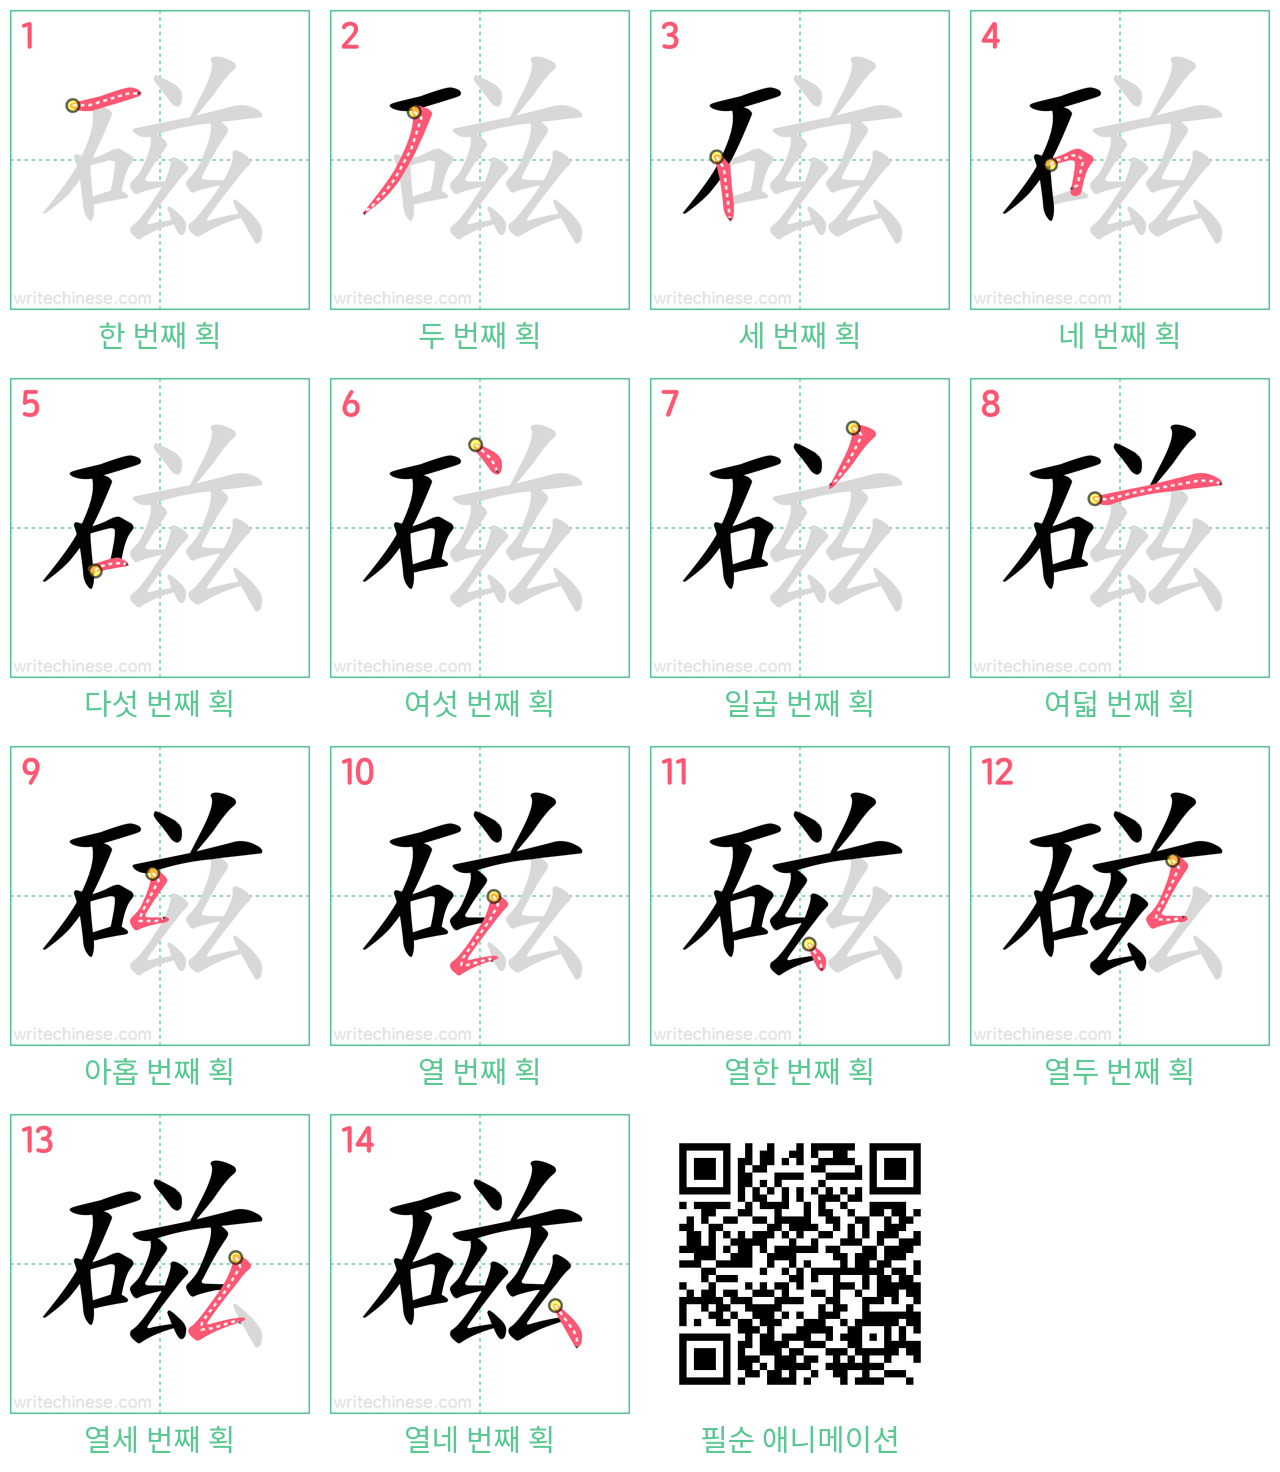 磁 step-by-step stroke order diagrams